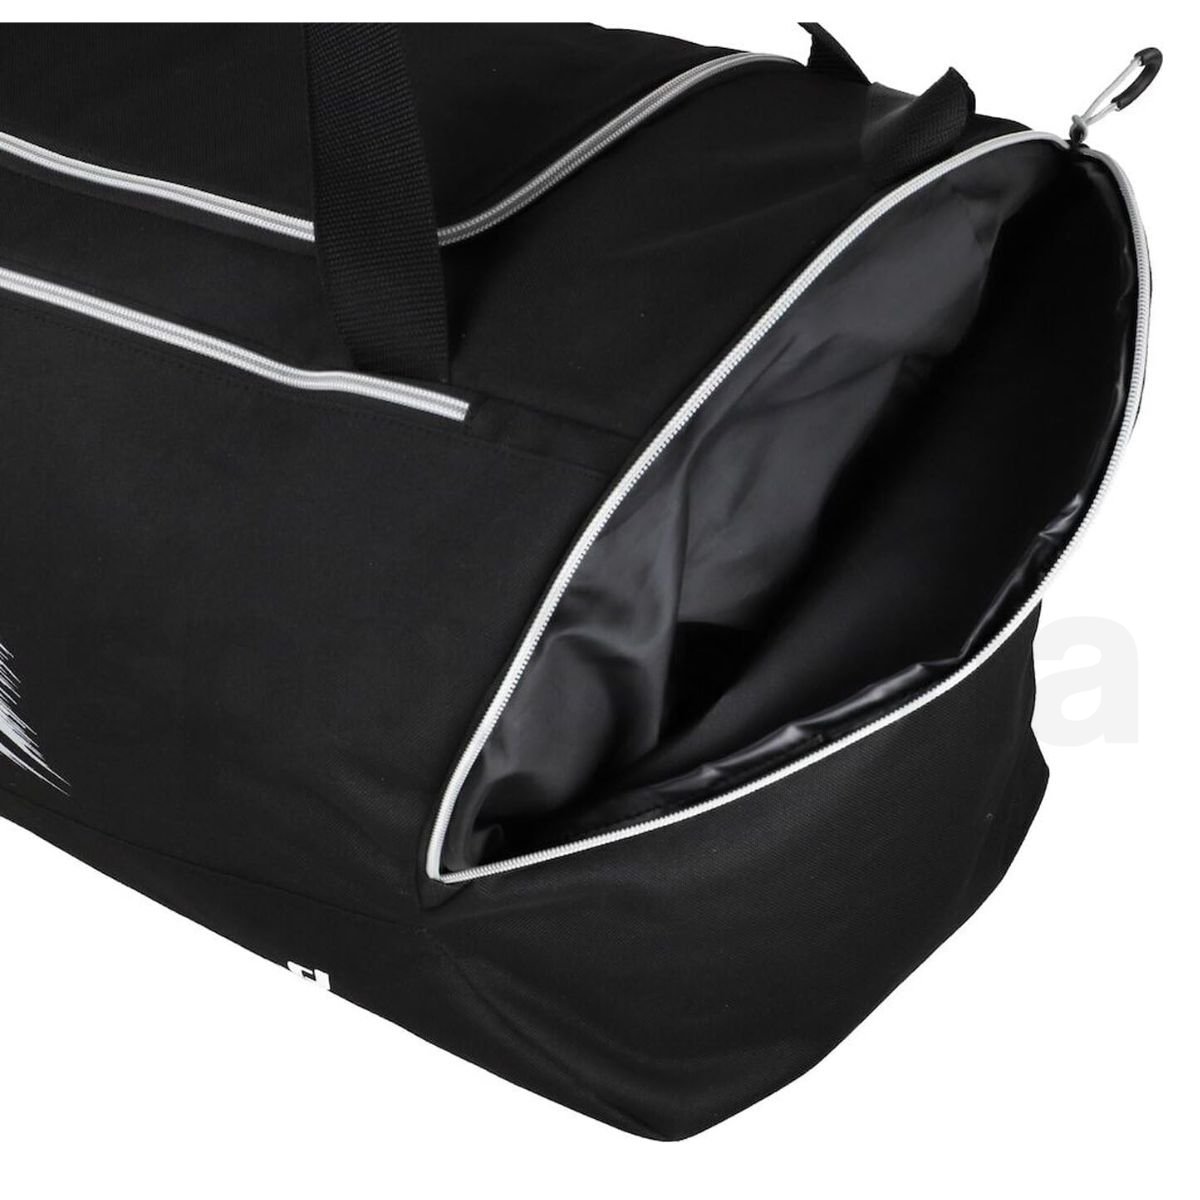 Taška Pro Touch Force Lite Teambag - černá